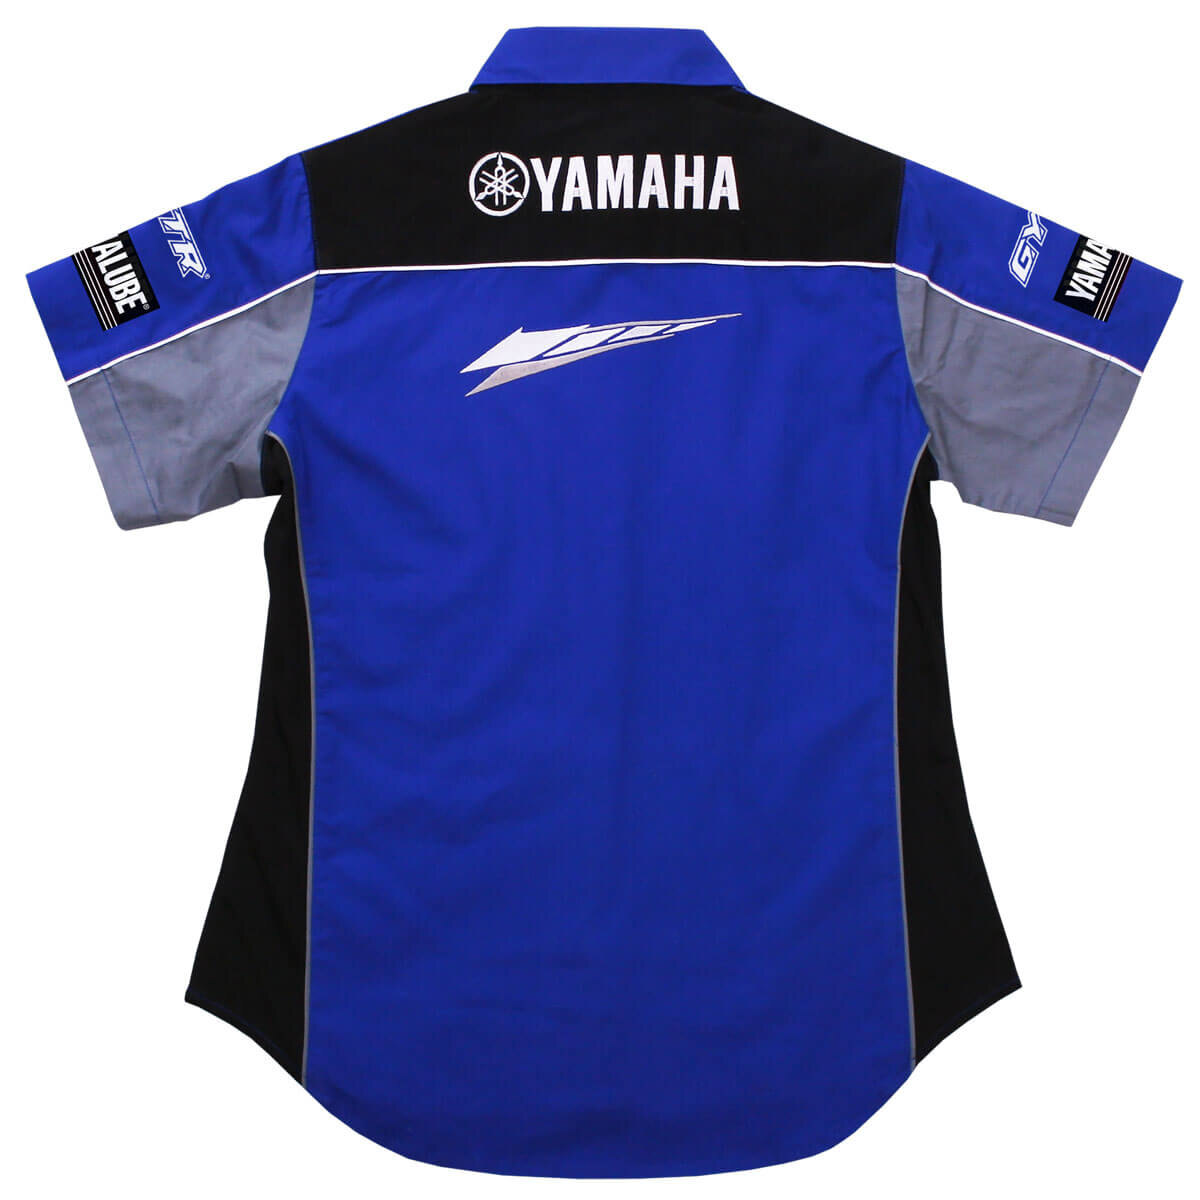 Women's Yamaha Racing Pit Lane Shirt Triple Extra Large blue/black